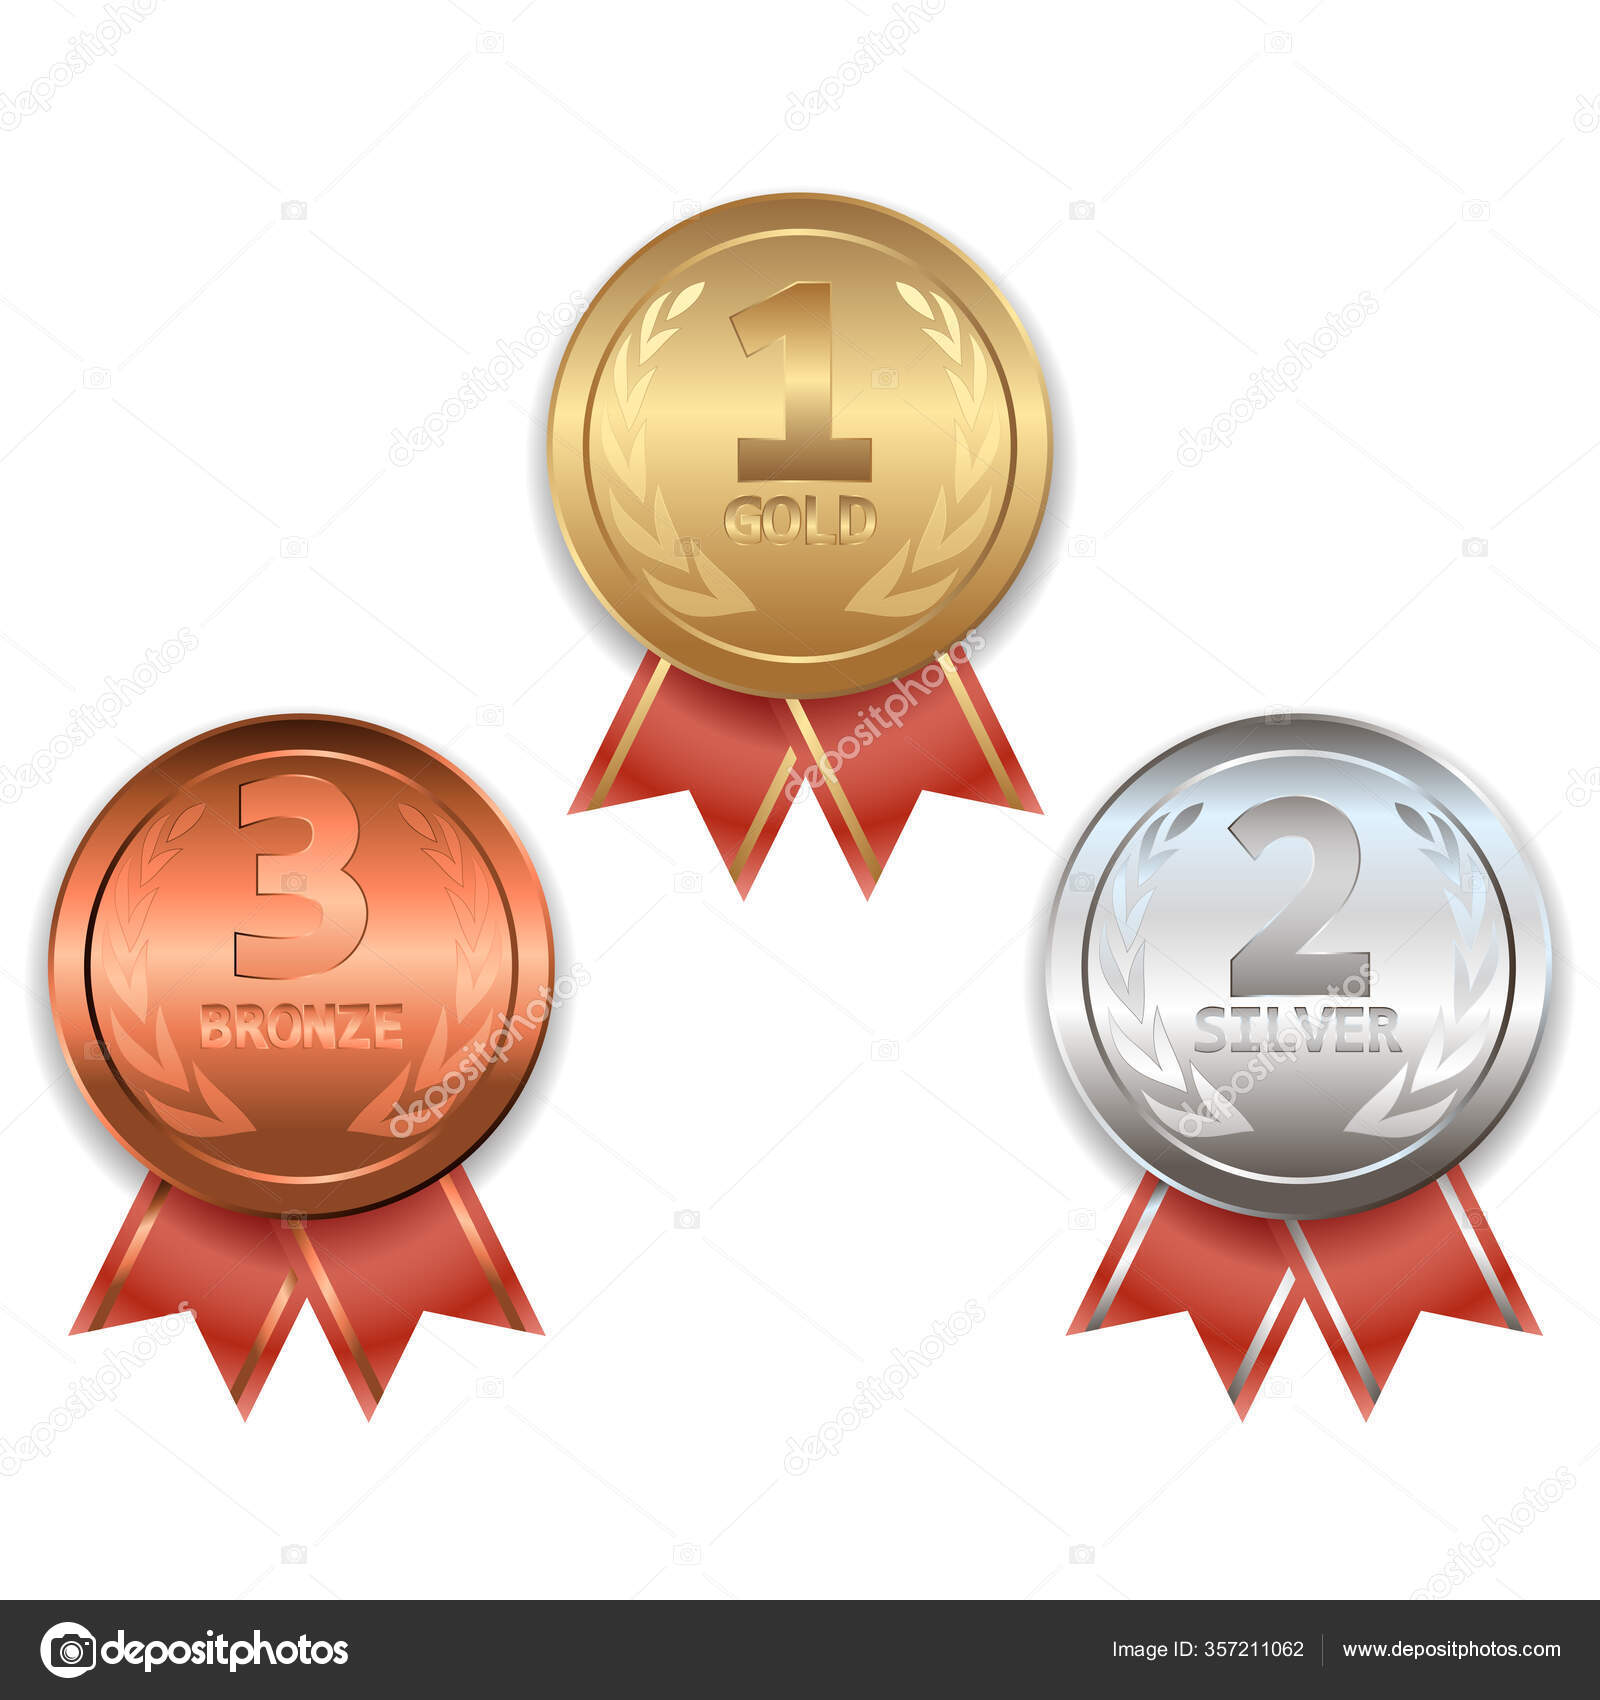 medallas de oro, plata y bronce vector.campeón y ganador premios